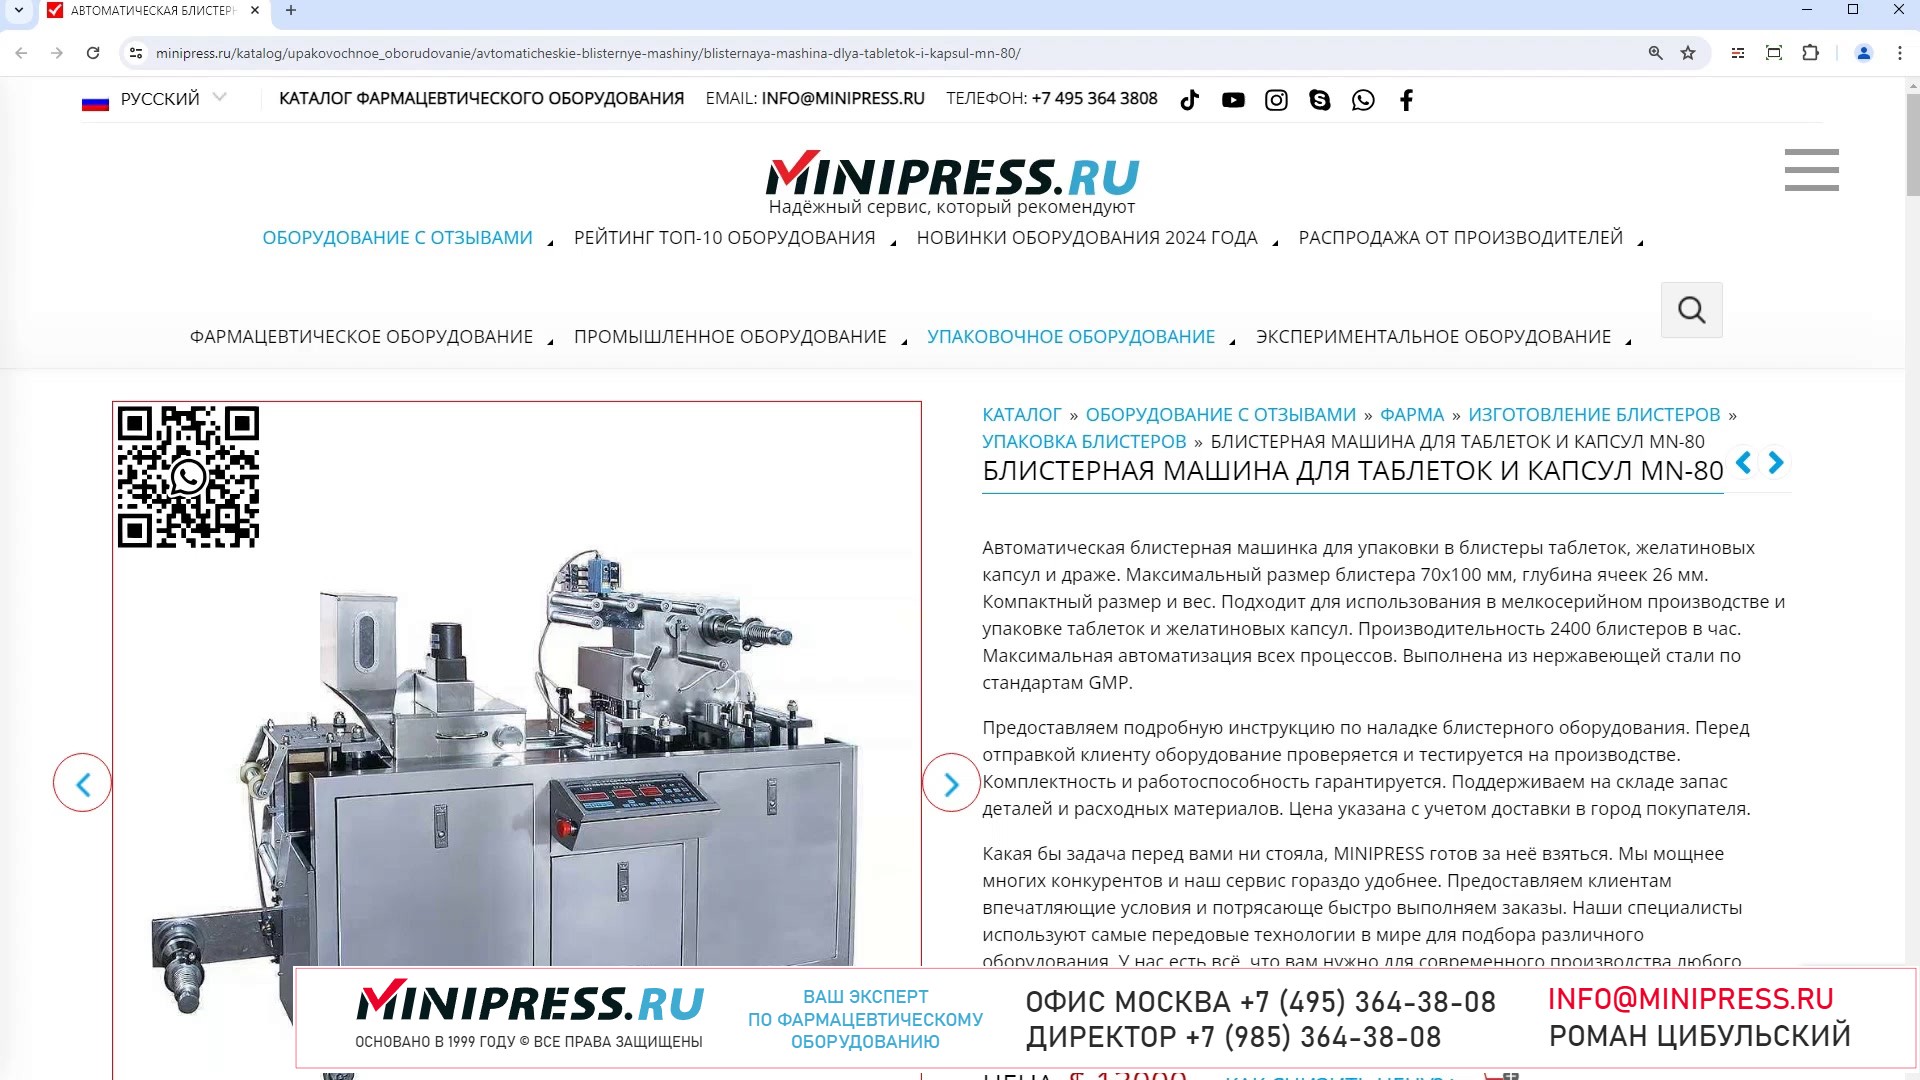 Minipress.ru Блистерная машина для таблеток и капсул MN-80